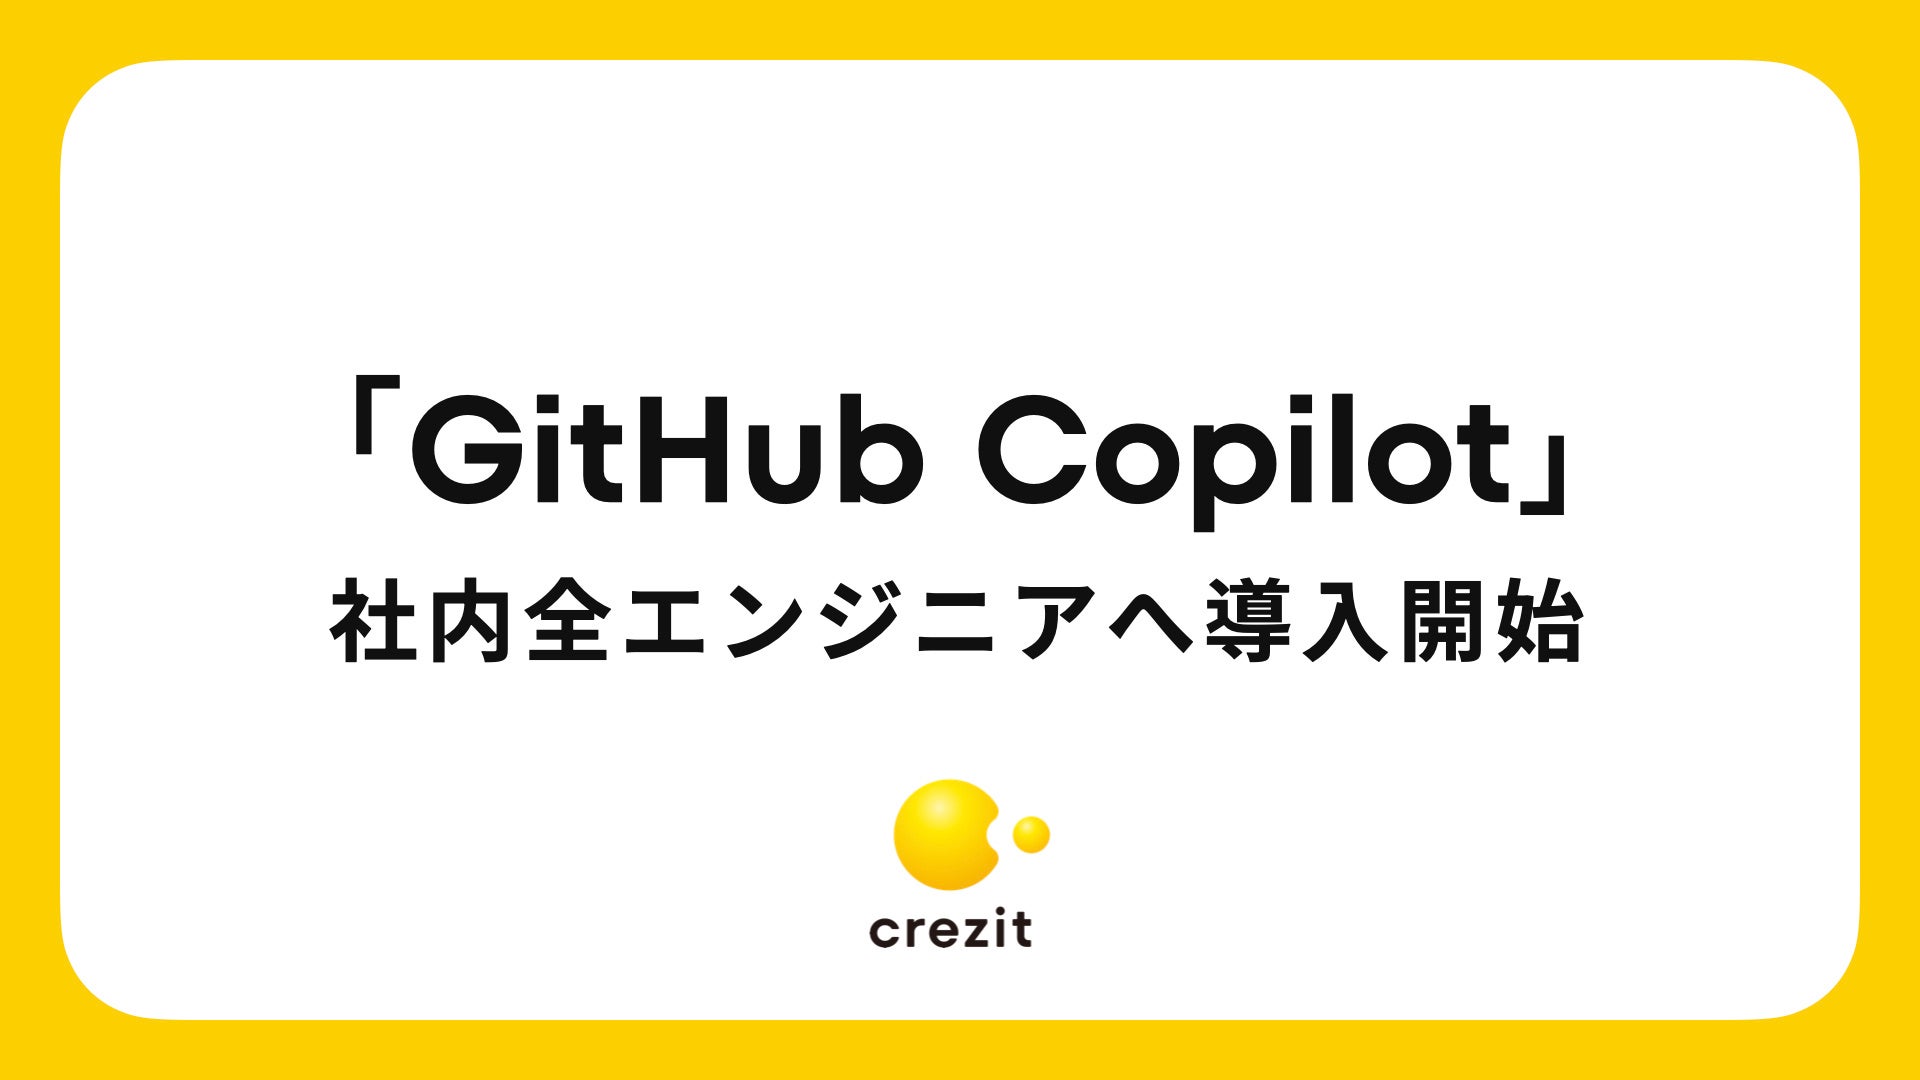 与信プラットフォーム「Credit as a Service」を運営するCrezit、「GitHub Copilot」の導入を開始